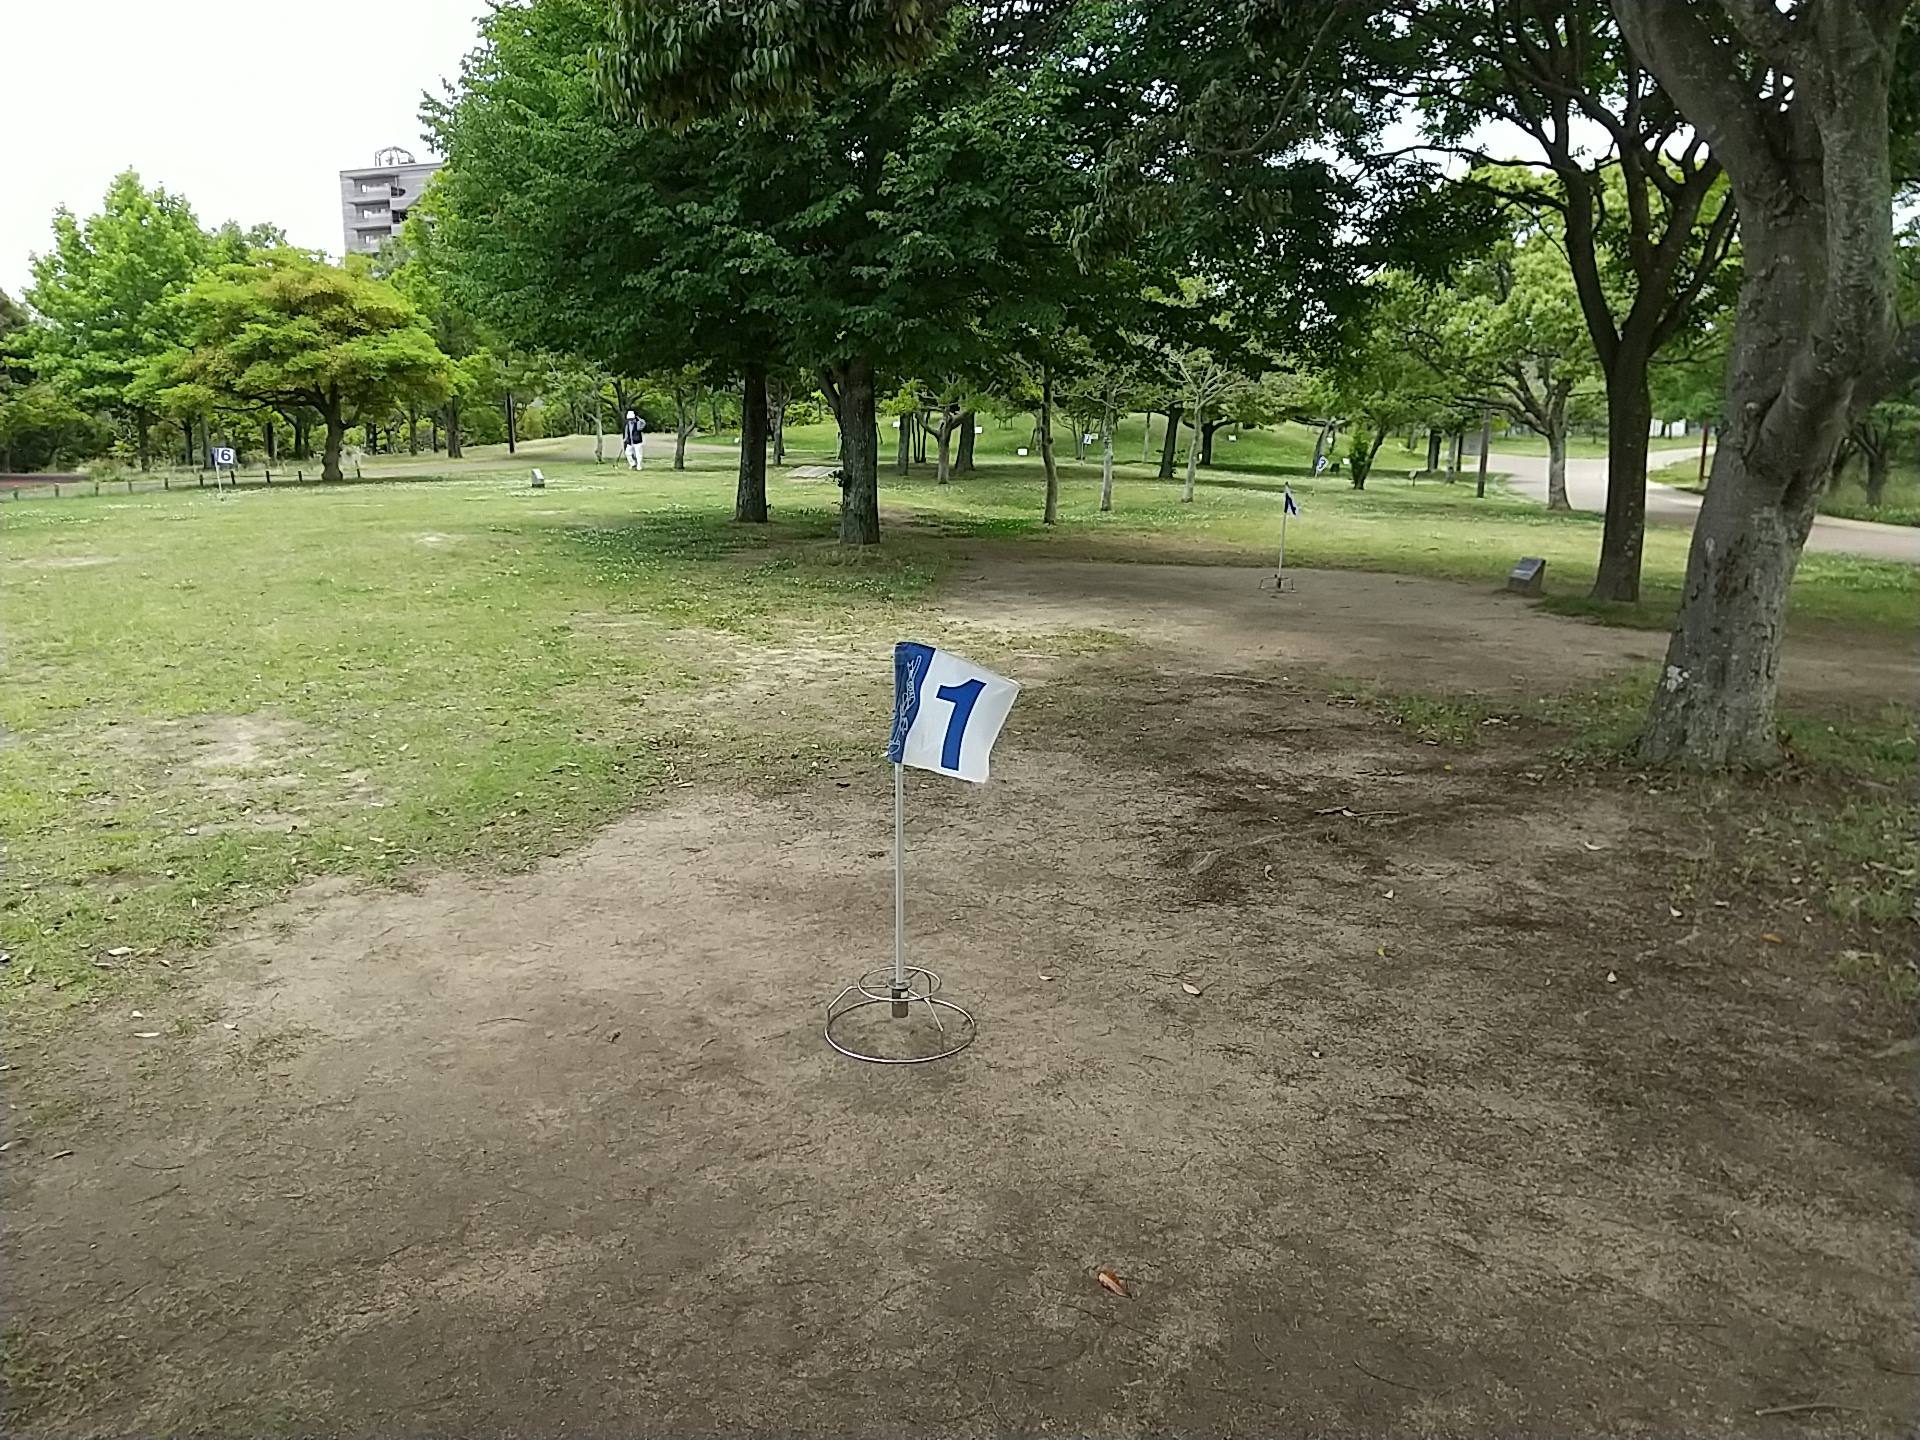 グランドゴルフ場として利用可能な疎林広場